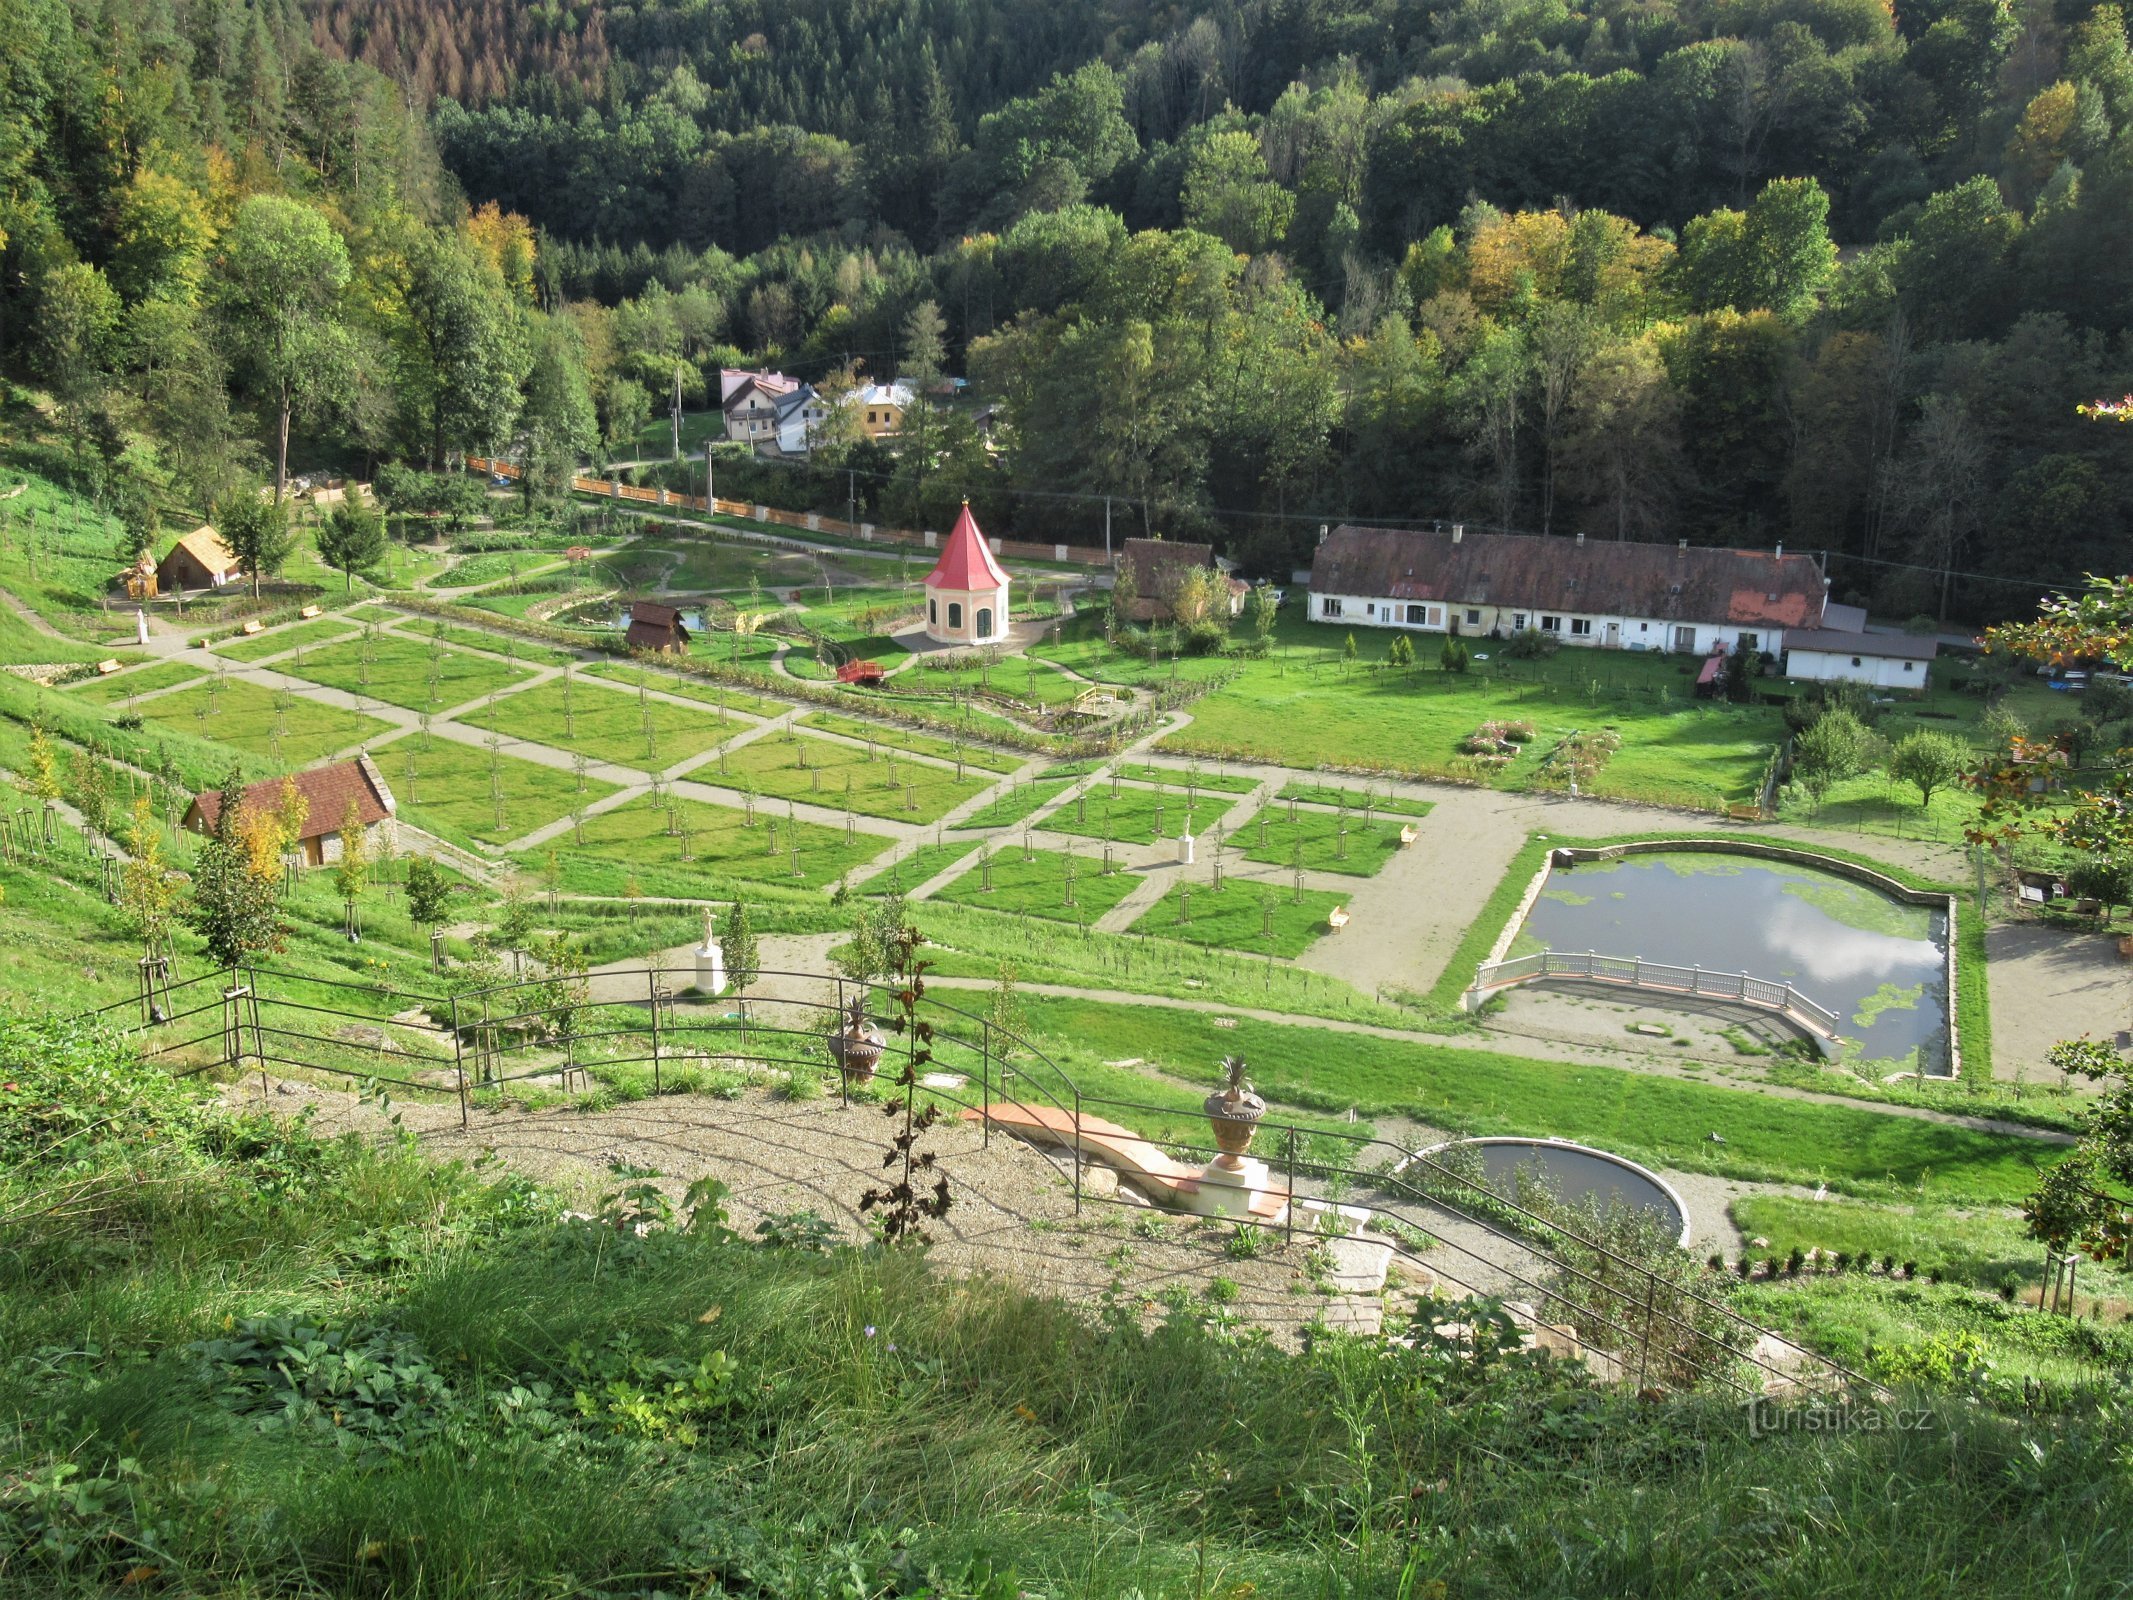 Ogród ozdobny na dachu jesienią 2020 r.